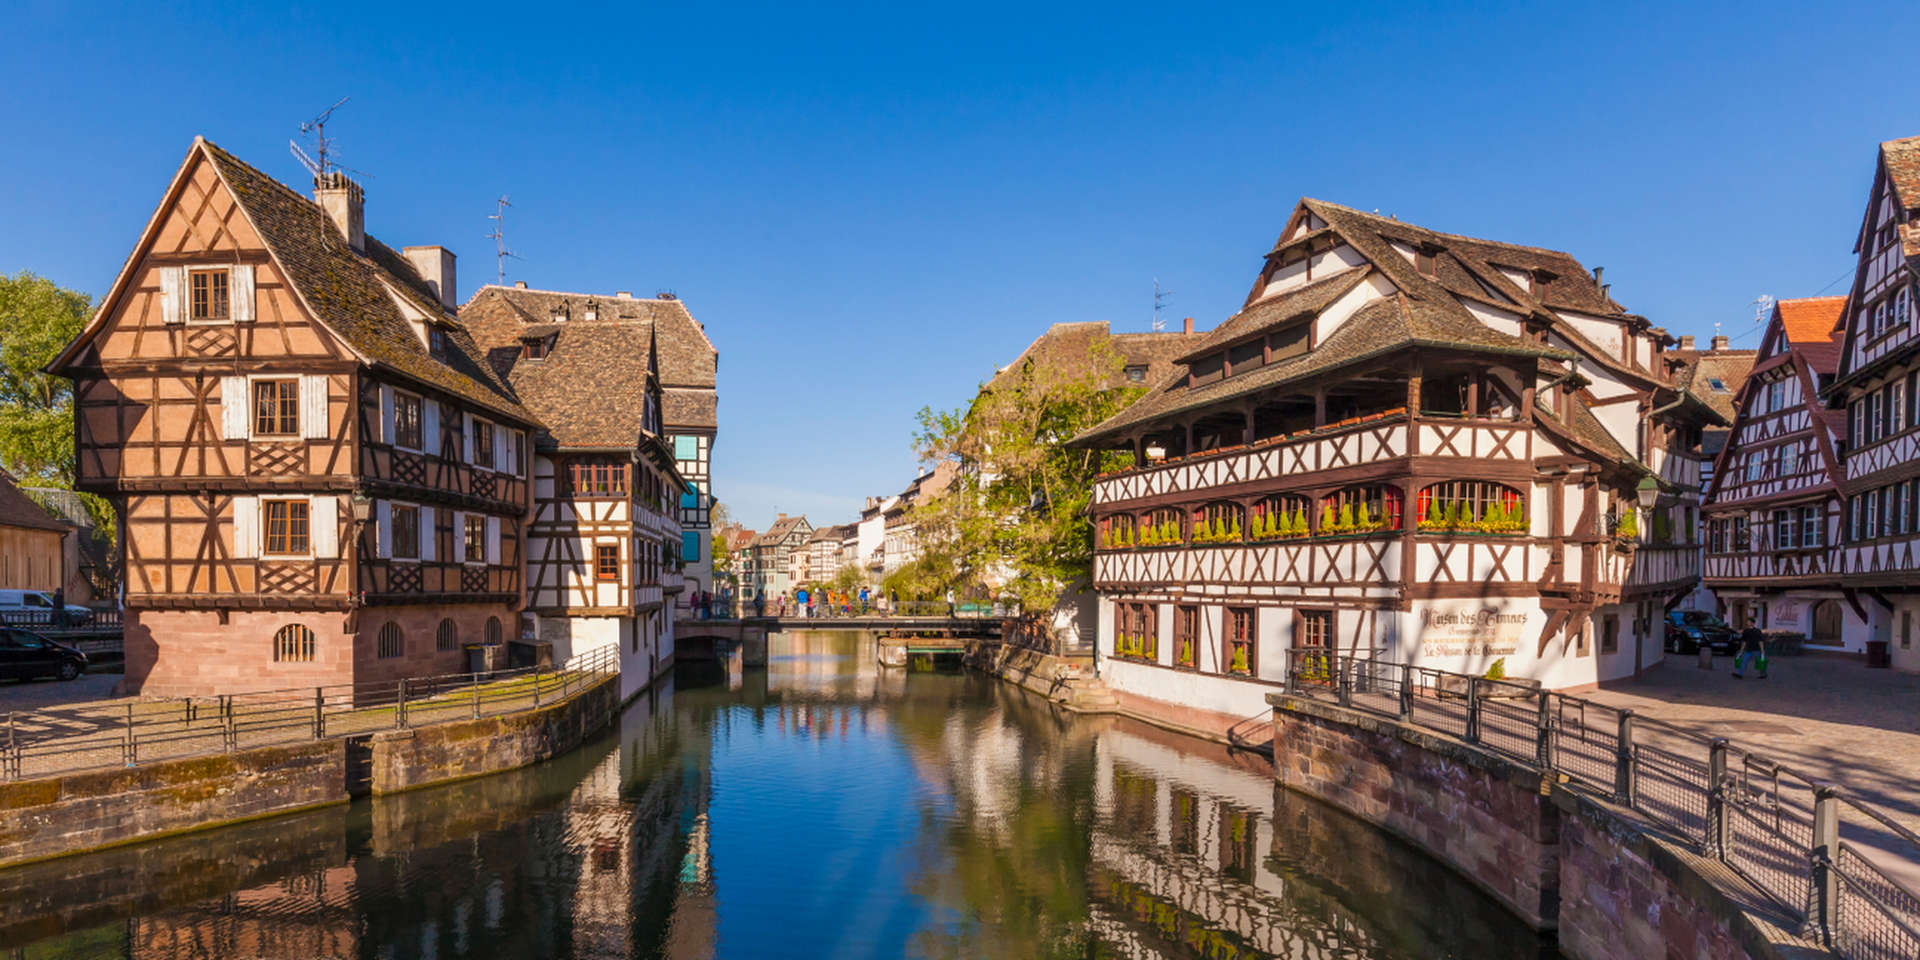 Le centre de l'île de Strasbourg est un paradis à colombages